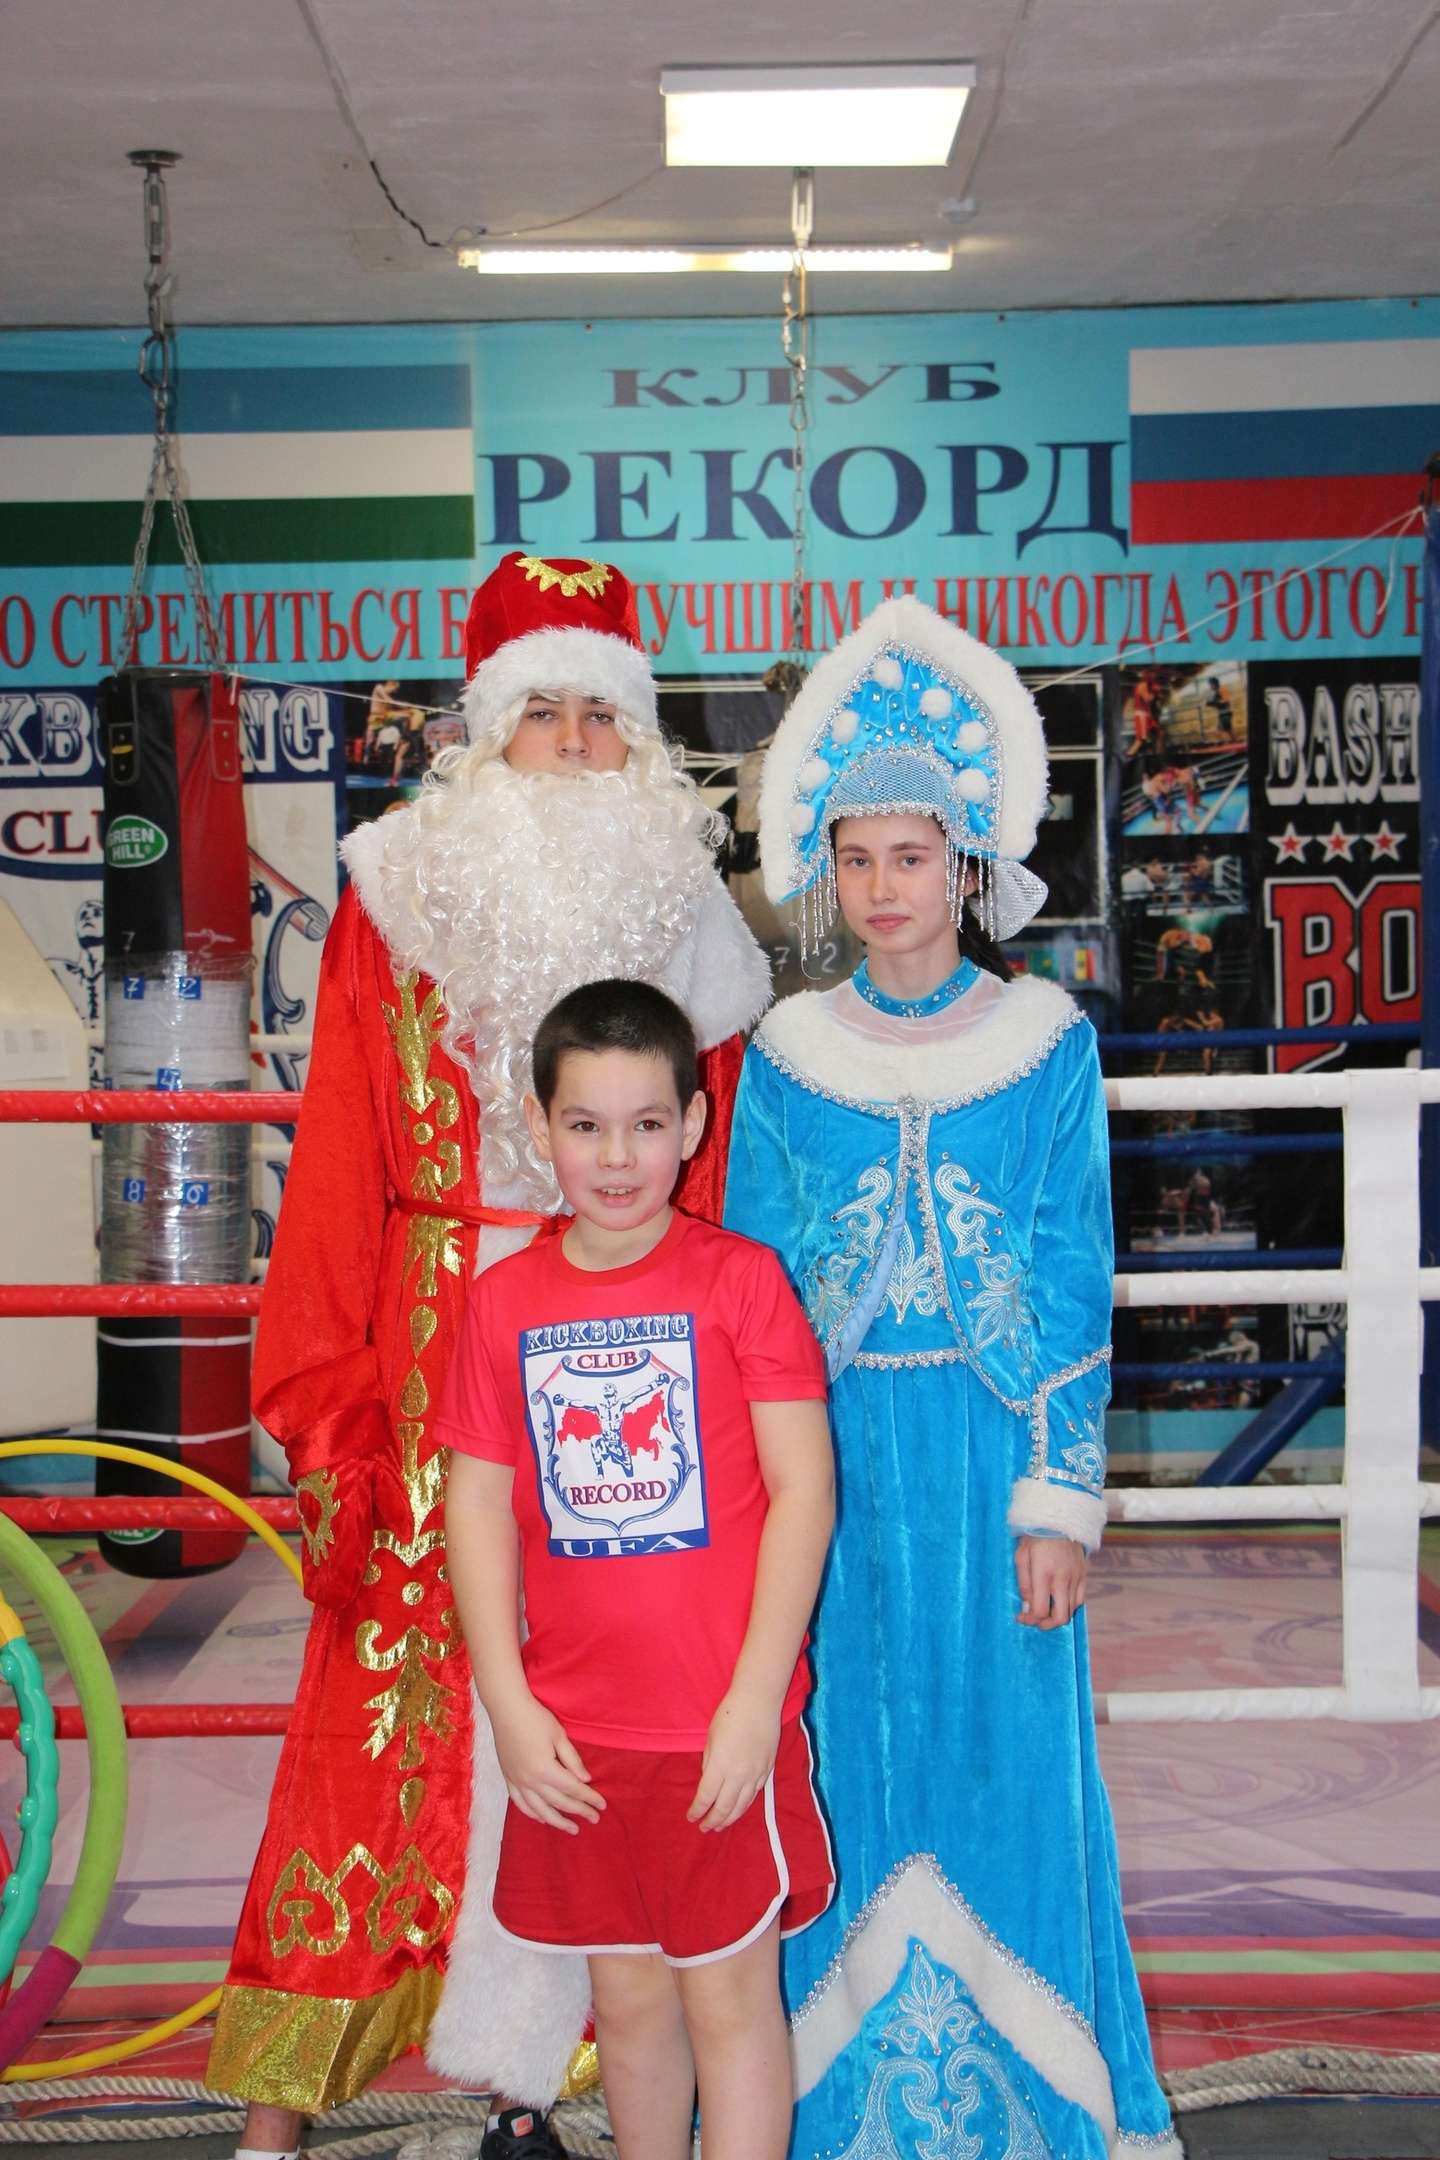 Тренировки ребят посетили дед Мороз и Снегурочка 😊😊😊